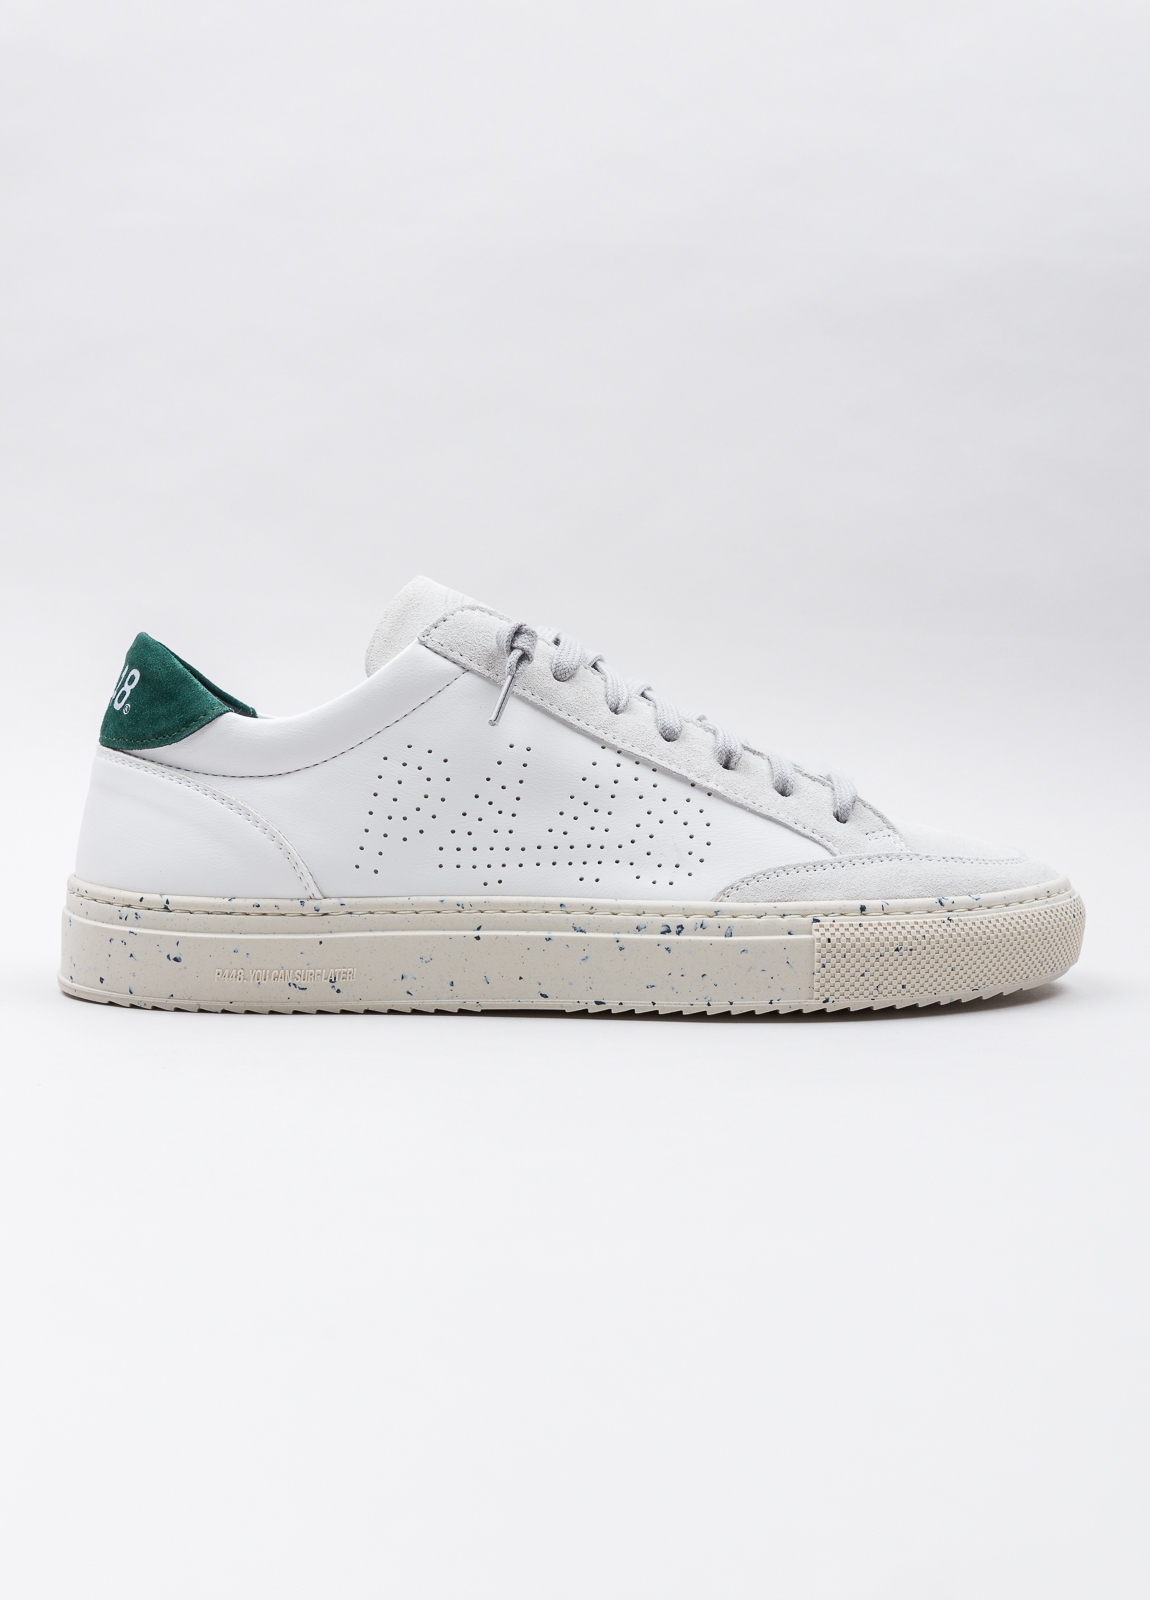 Sneaker P448 blanca y verde - Ítem4